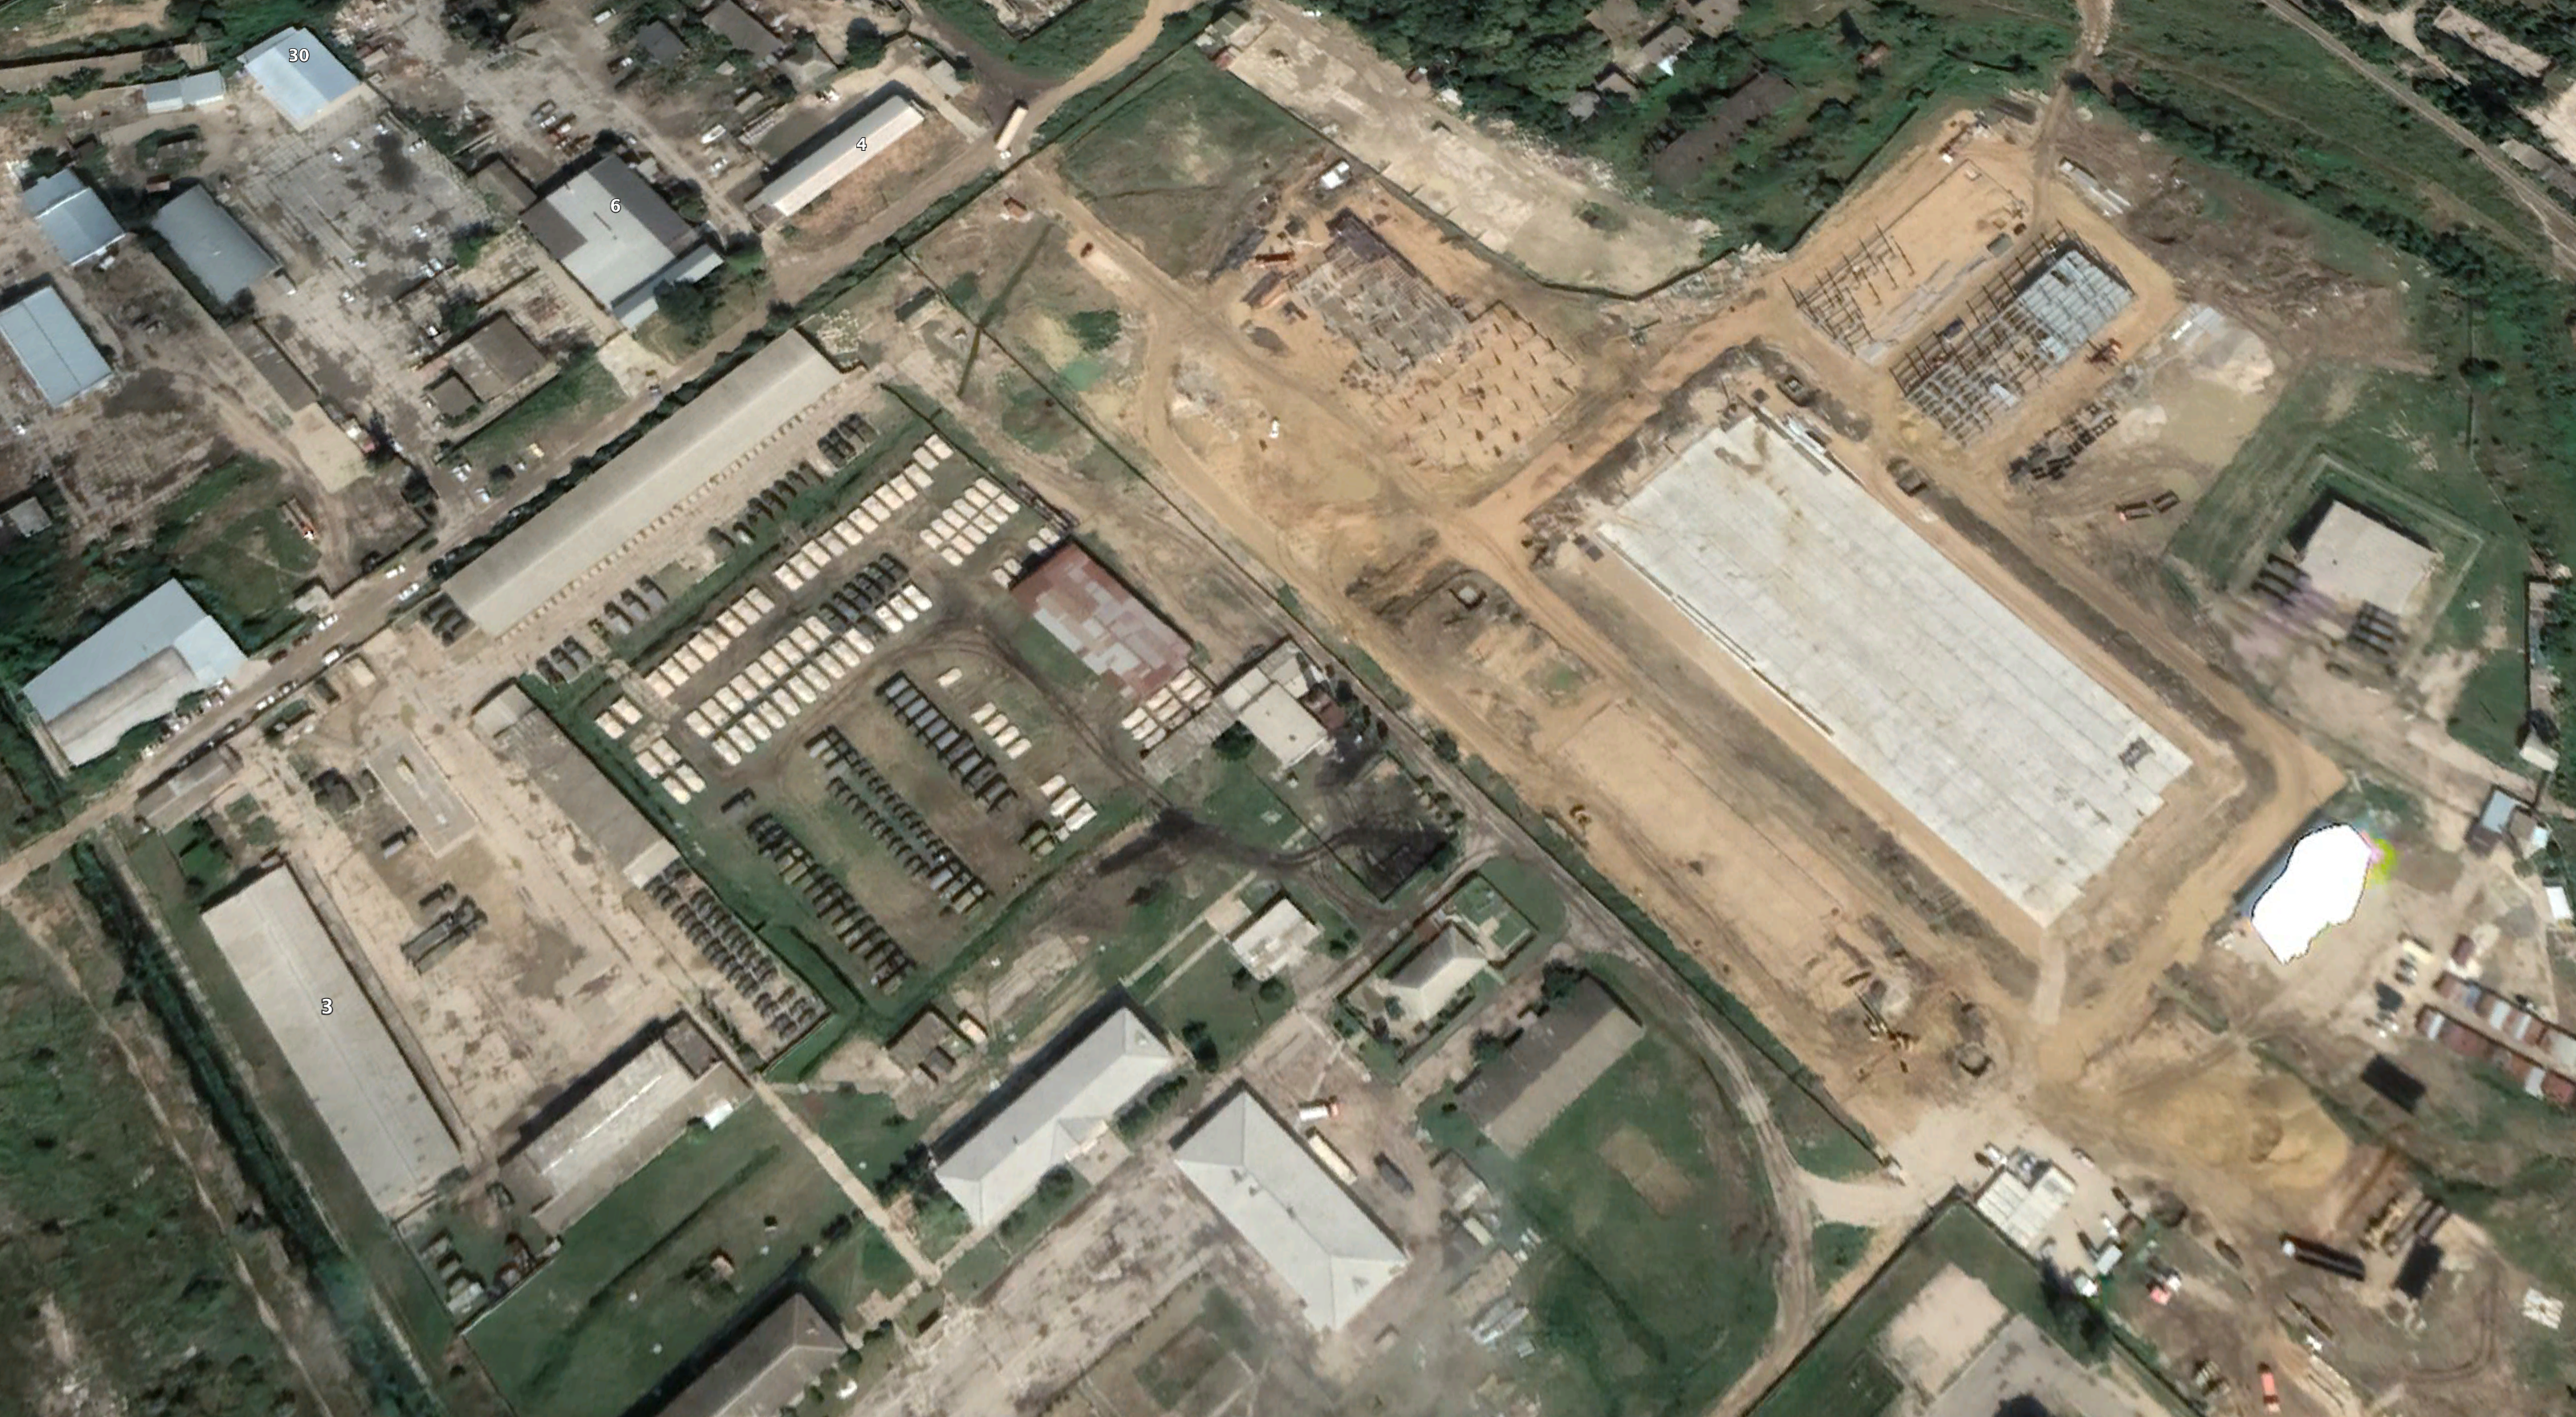  Парк техніки і будівництво 1-ї черги ППД 56-го ДШП. Серпень 2021р. Фото: Google Earth